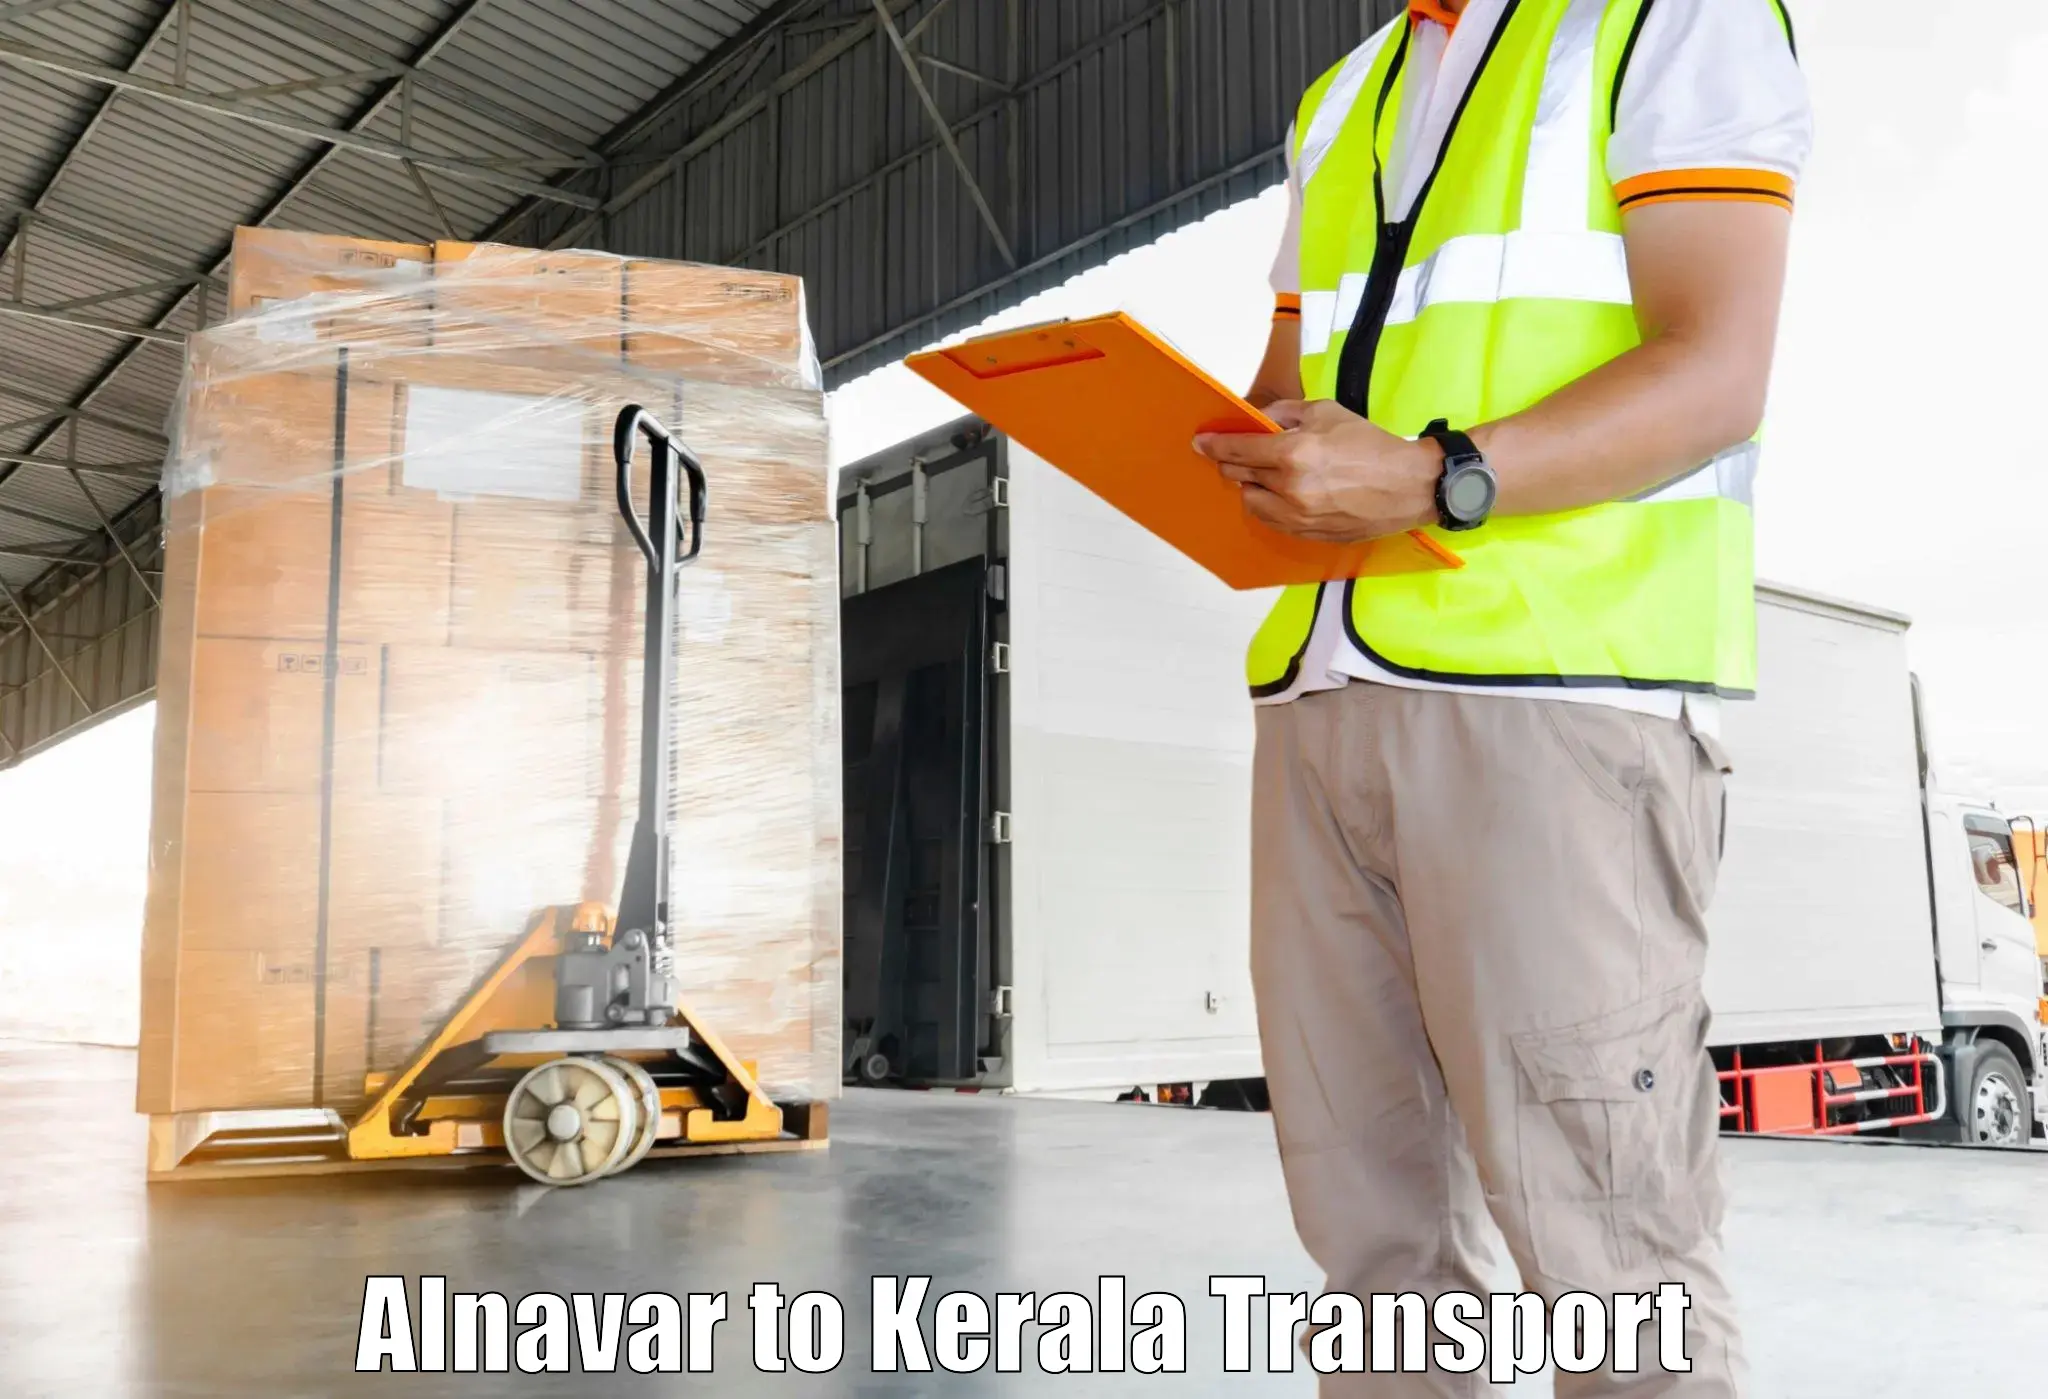 Commercial transport service Alnavar to Mundakayam